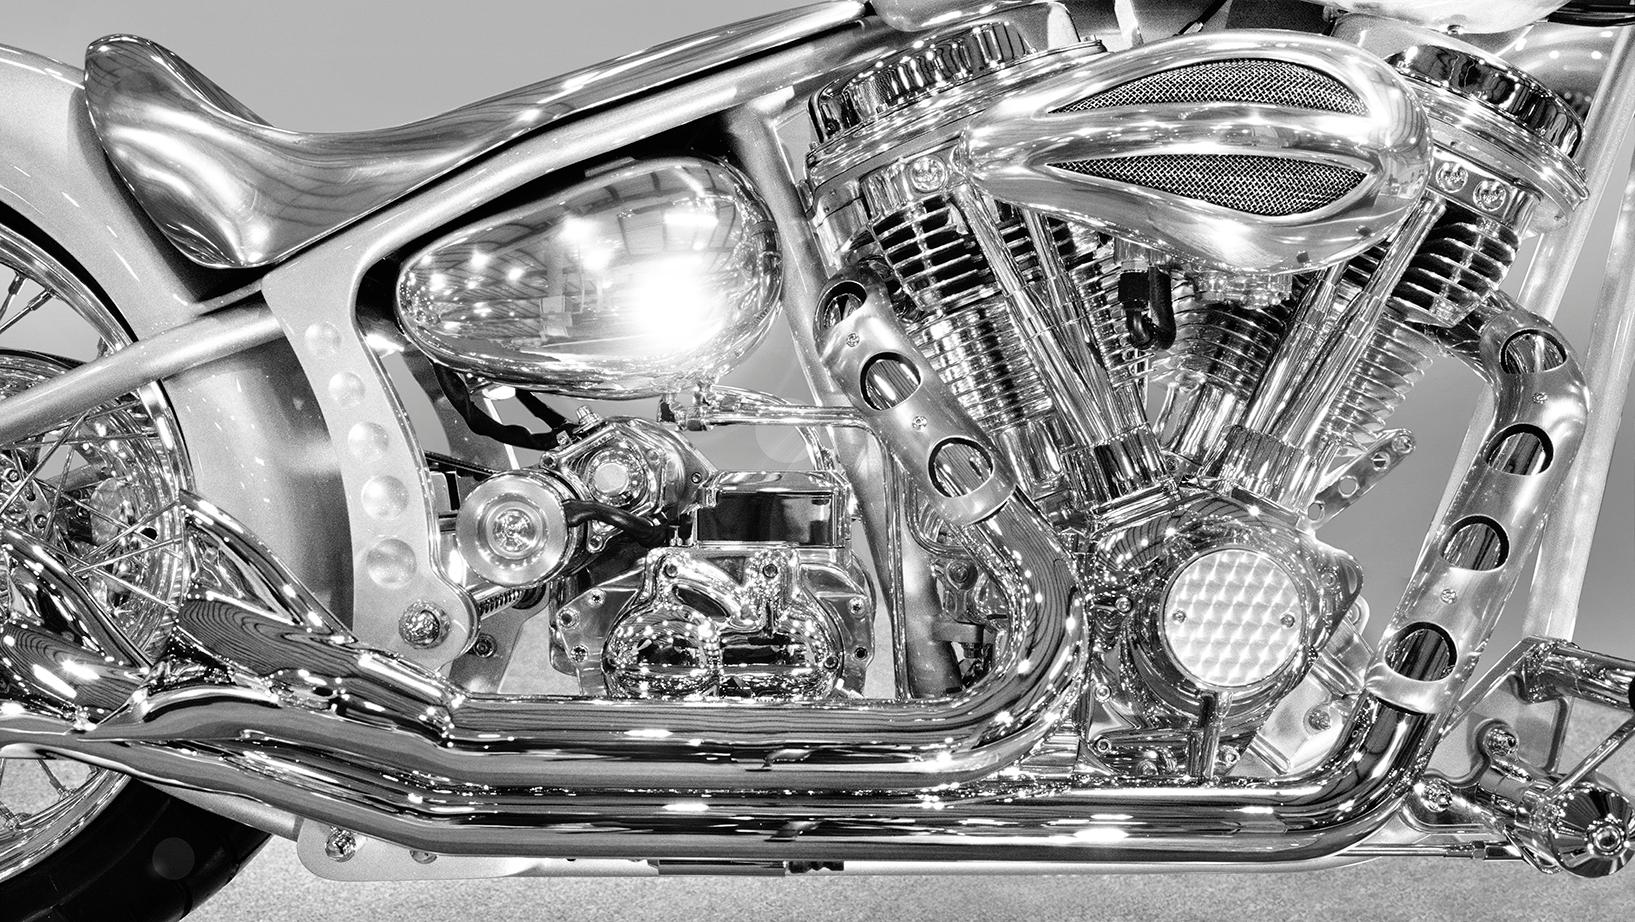 Chopper 2003 - Großformatiges Foto der ikonischen Harley Davidson-Chromdetails